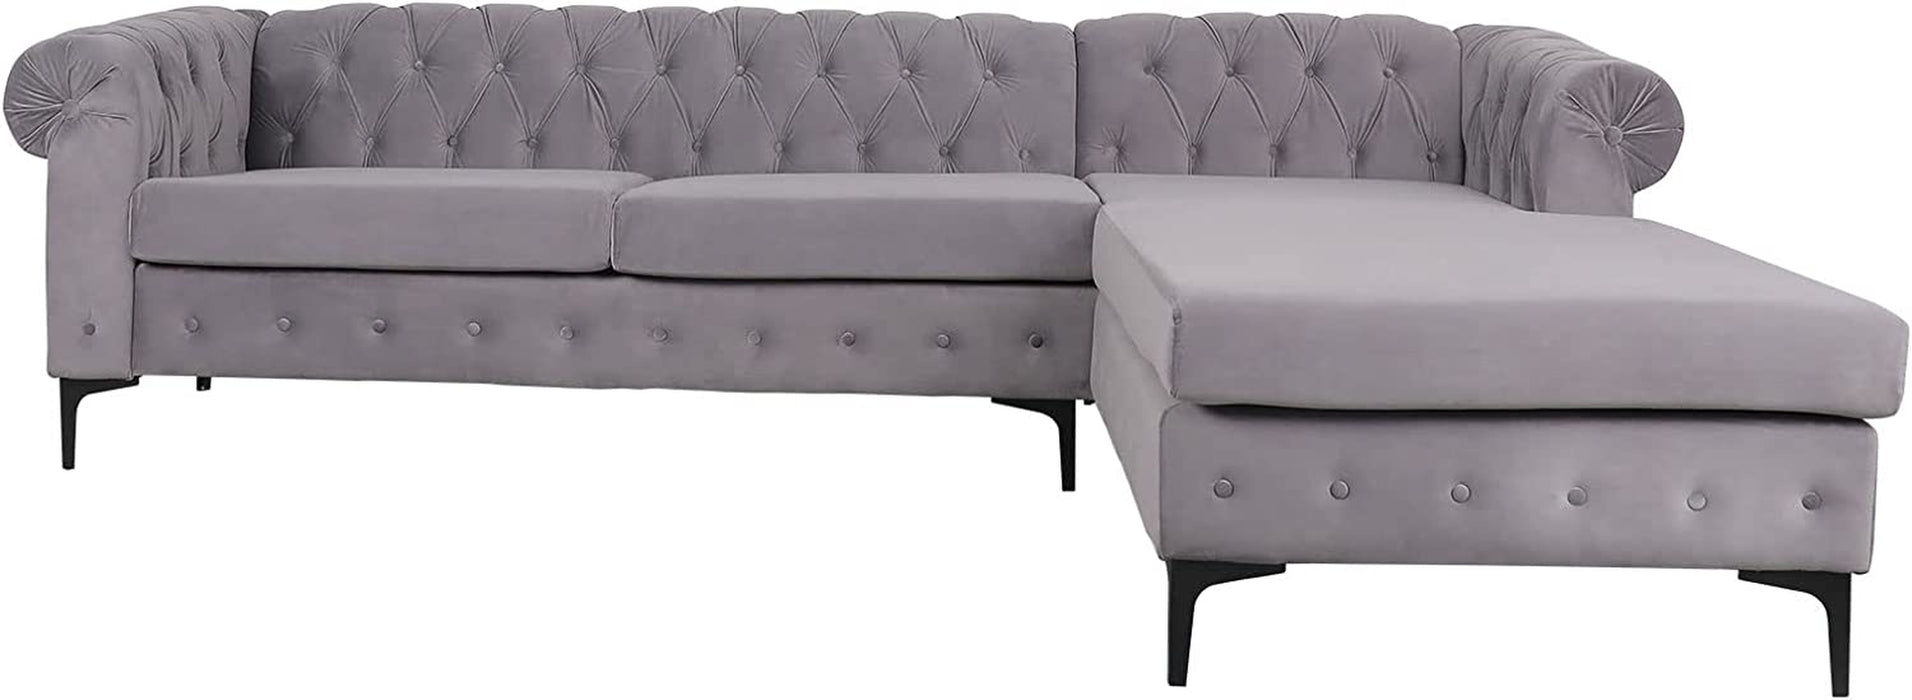 L-Shaped Velvet Chesterfield Sectional Sofa, Dark Gray